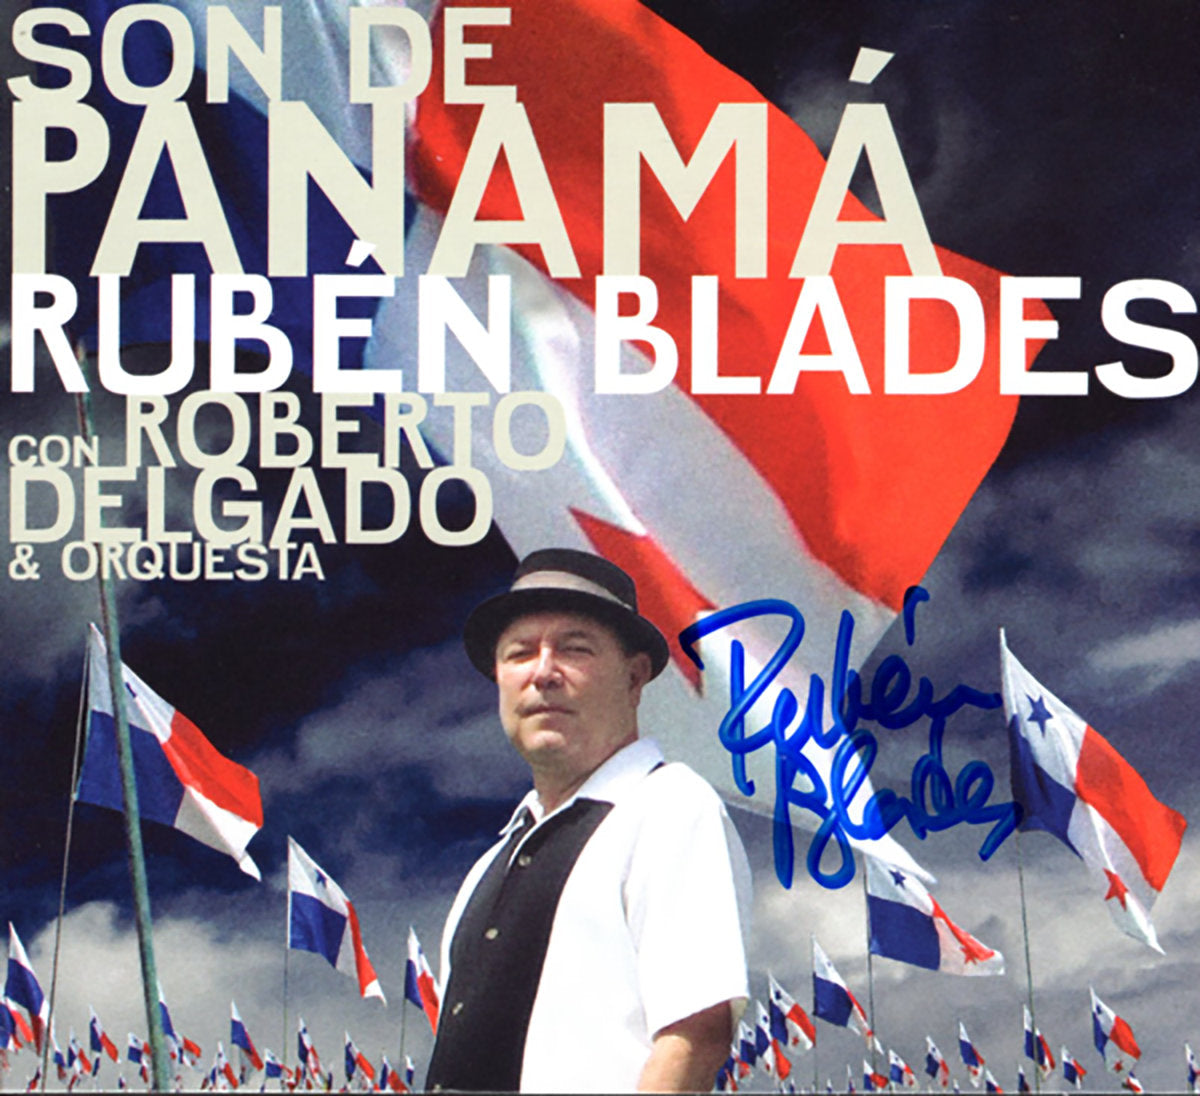 Rubén Blades with Roberto Delgado & Orchestra -"Son de Panamá"| CD or Autographed CD or Digital Download